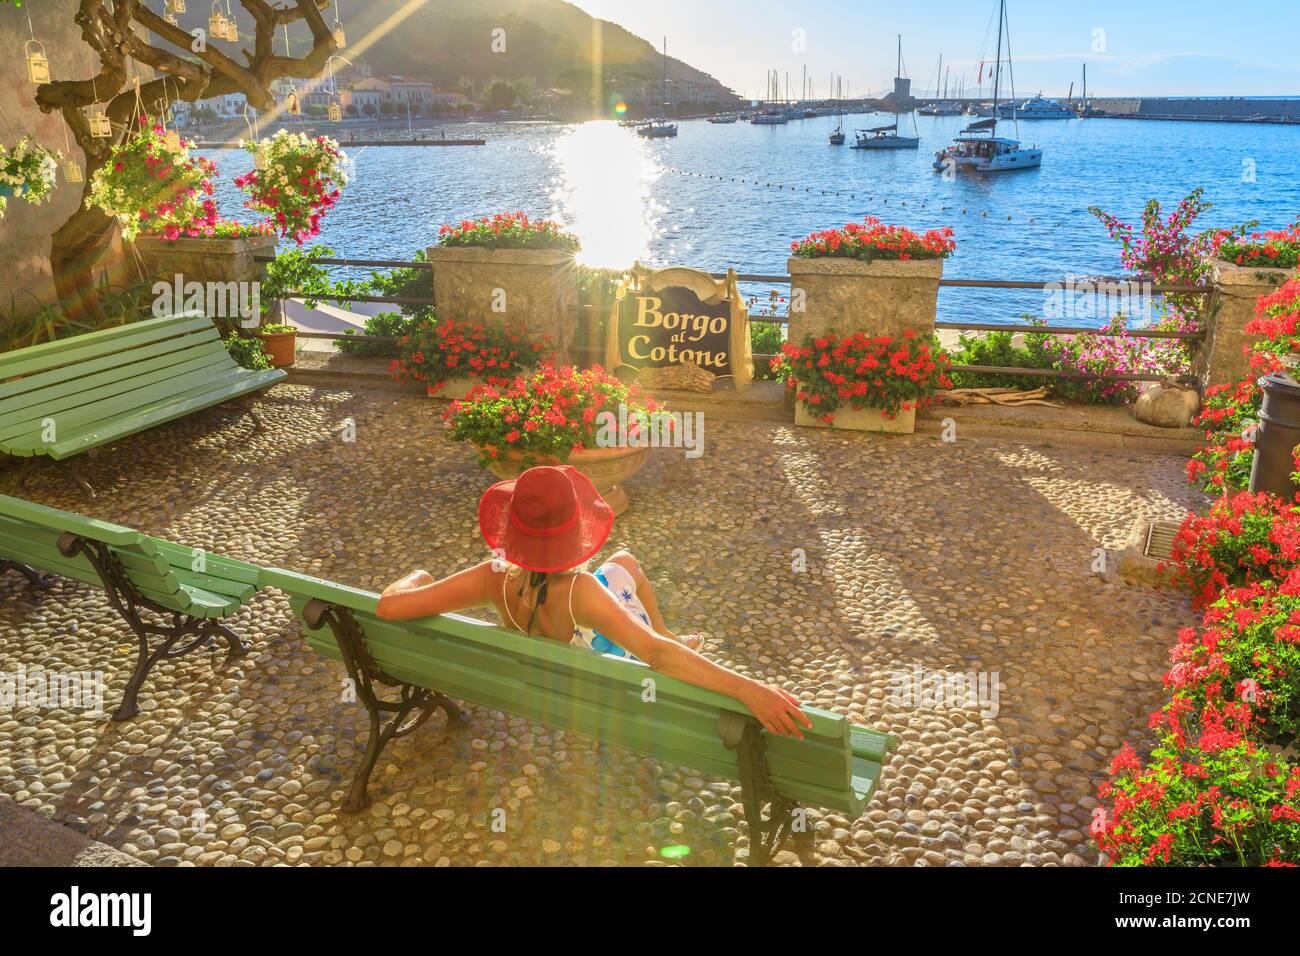 Elegante donna in rosso con cappello sul lungomare di Marciana Marina, il fiorito quartiere antico chiamato Borgo al Cotone, isola d'Elba, Arcipelago Toscano Foto Stock